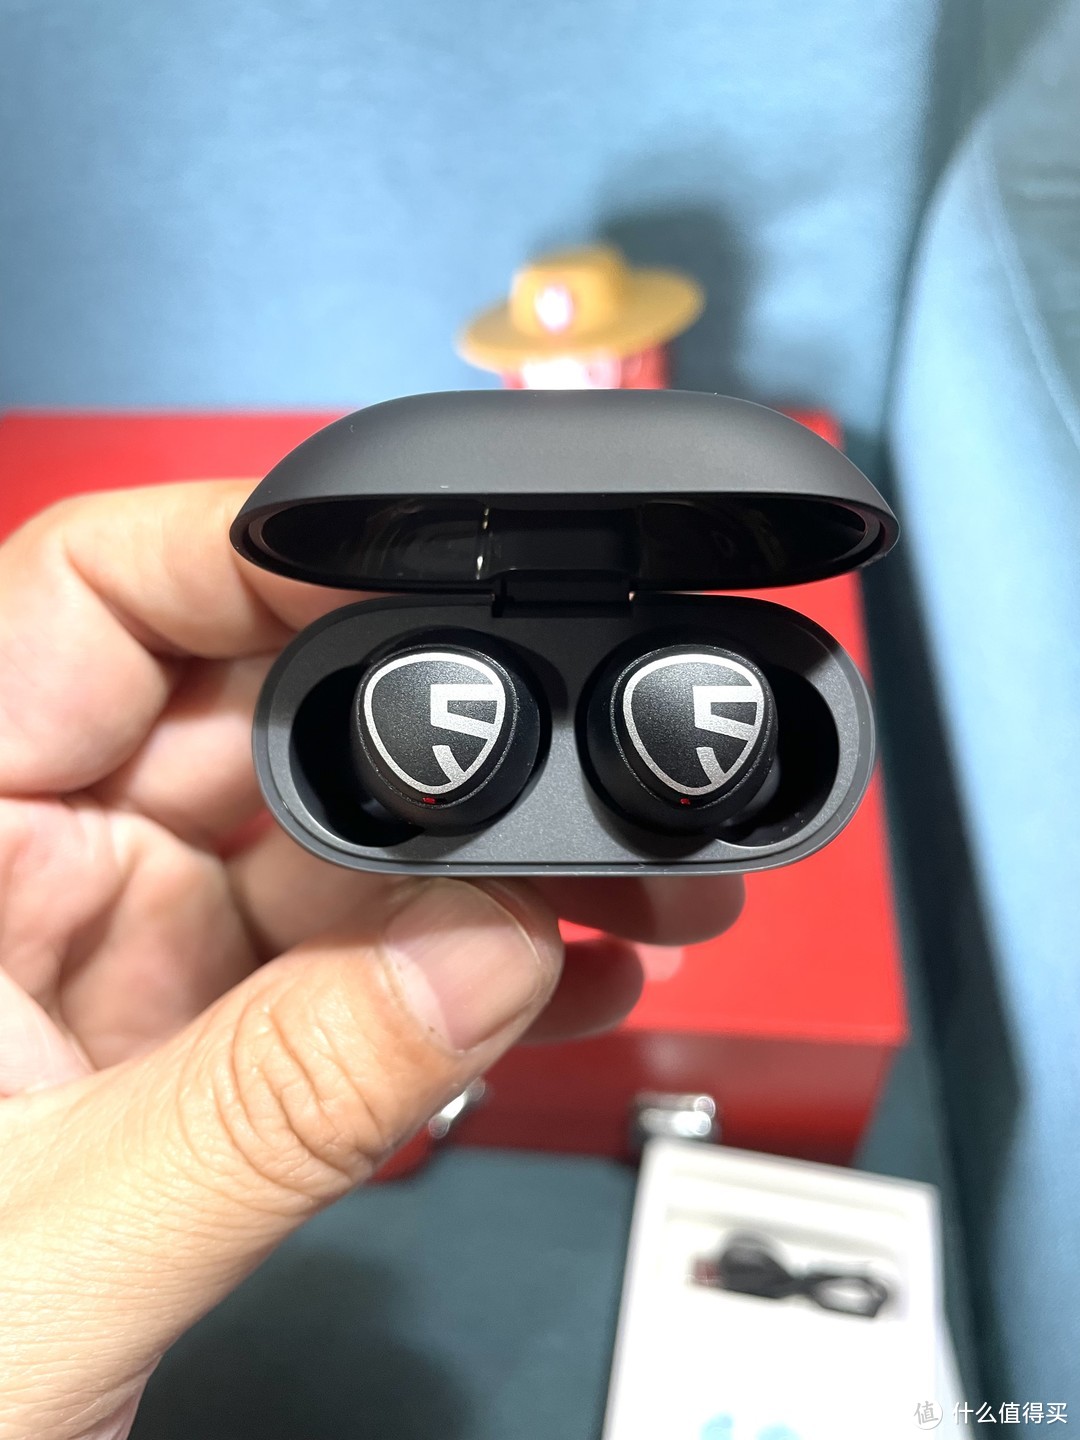 269元到手的SoundPEATS Mini Pro 主动降噪蓝牙耳机开箱分享